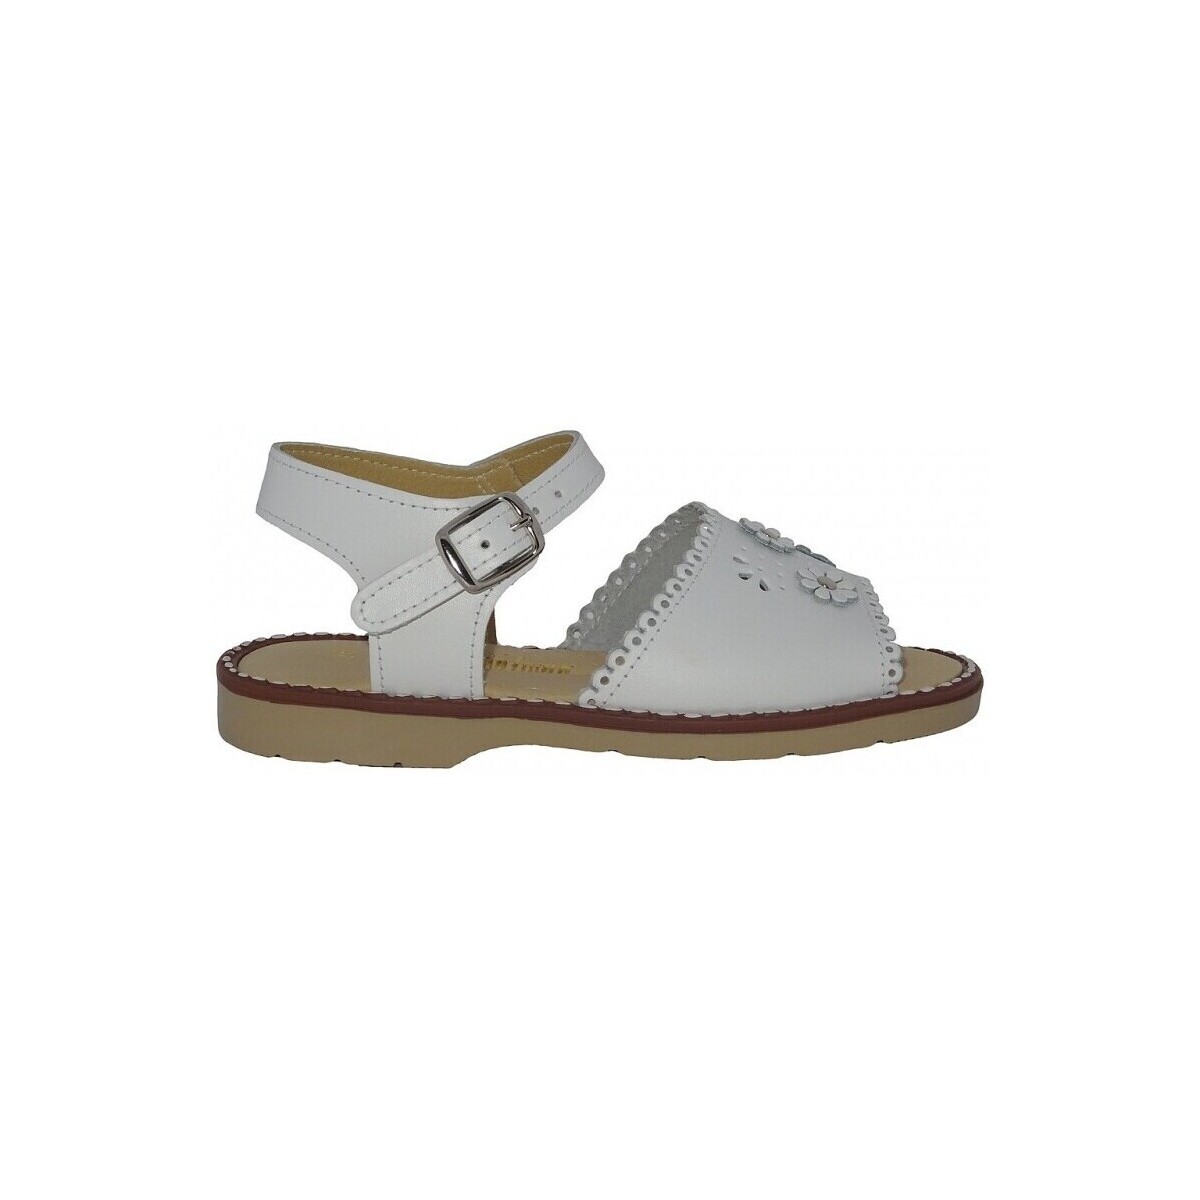 kengät Sandaalit ja avokkaat Petit Ser 21864-18 Valkoinen